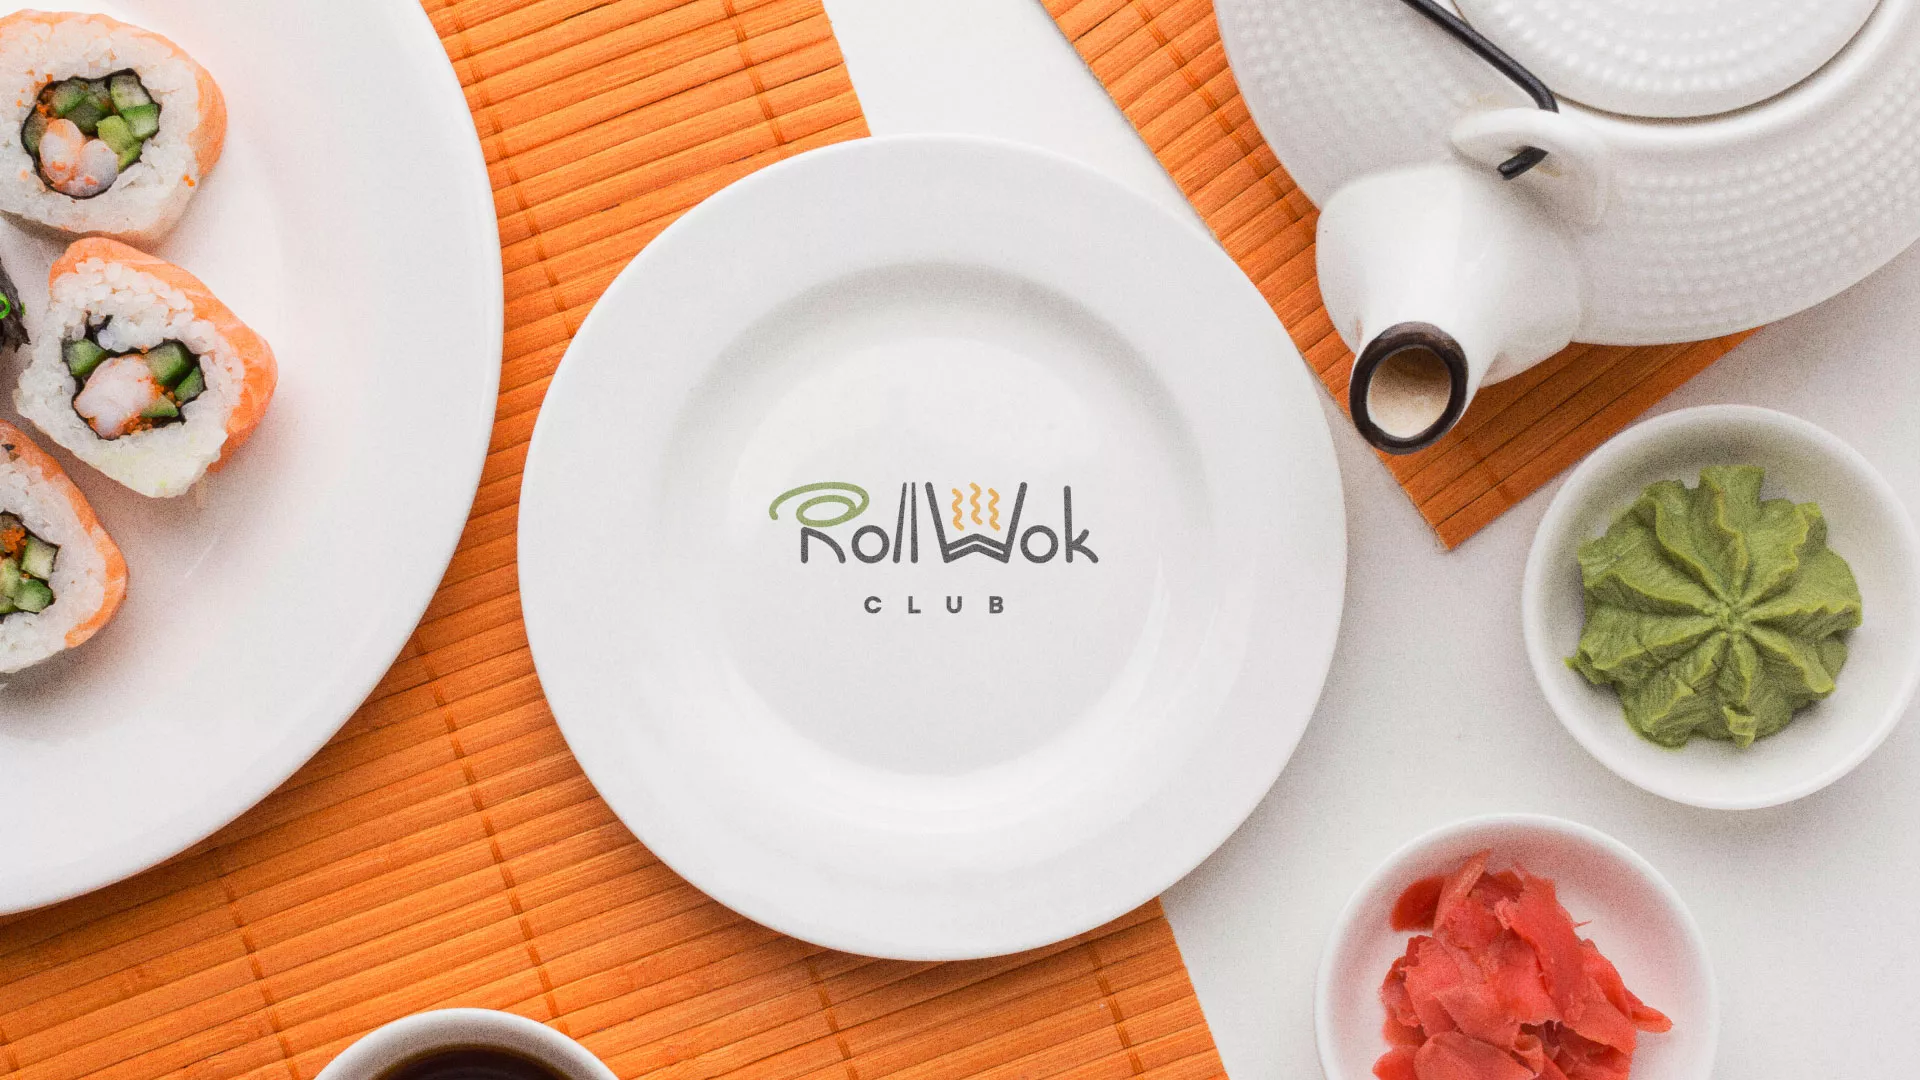 Разработка логотипа и фирменного стиля суши-бара «Roll Wok Club» в Грязях